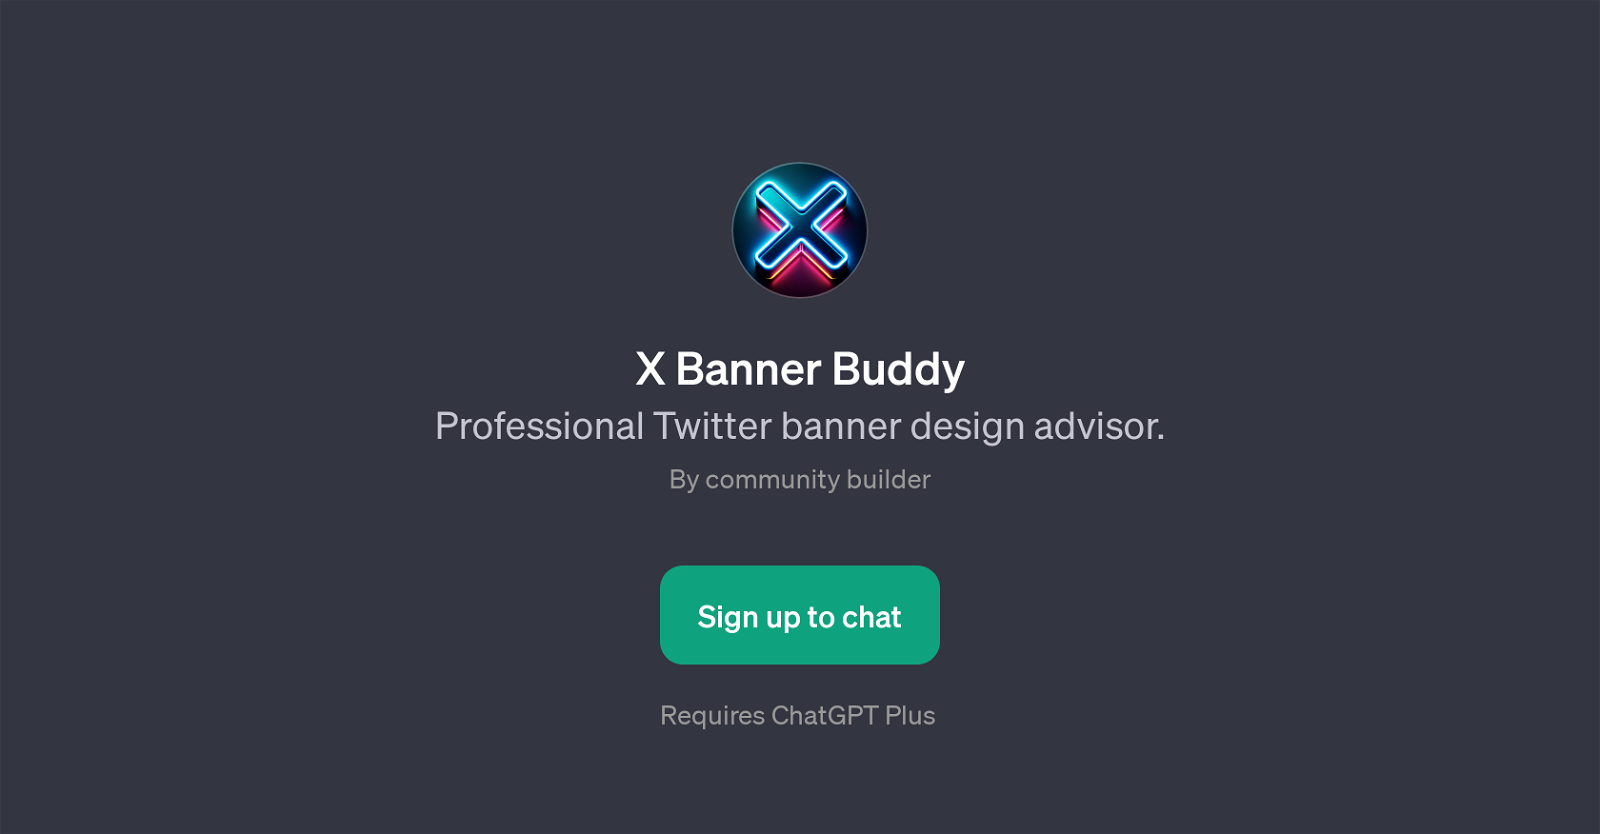 X Banner Buddy website